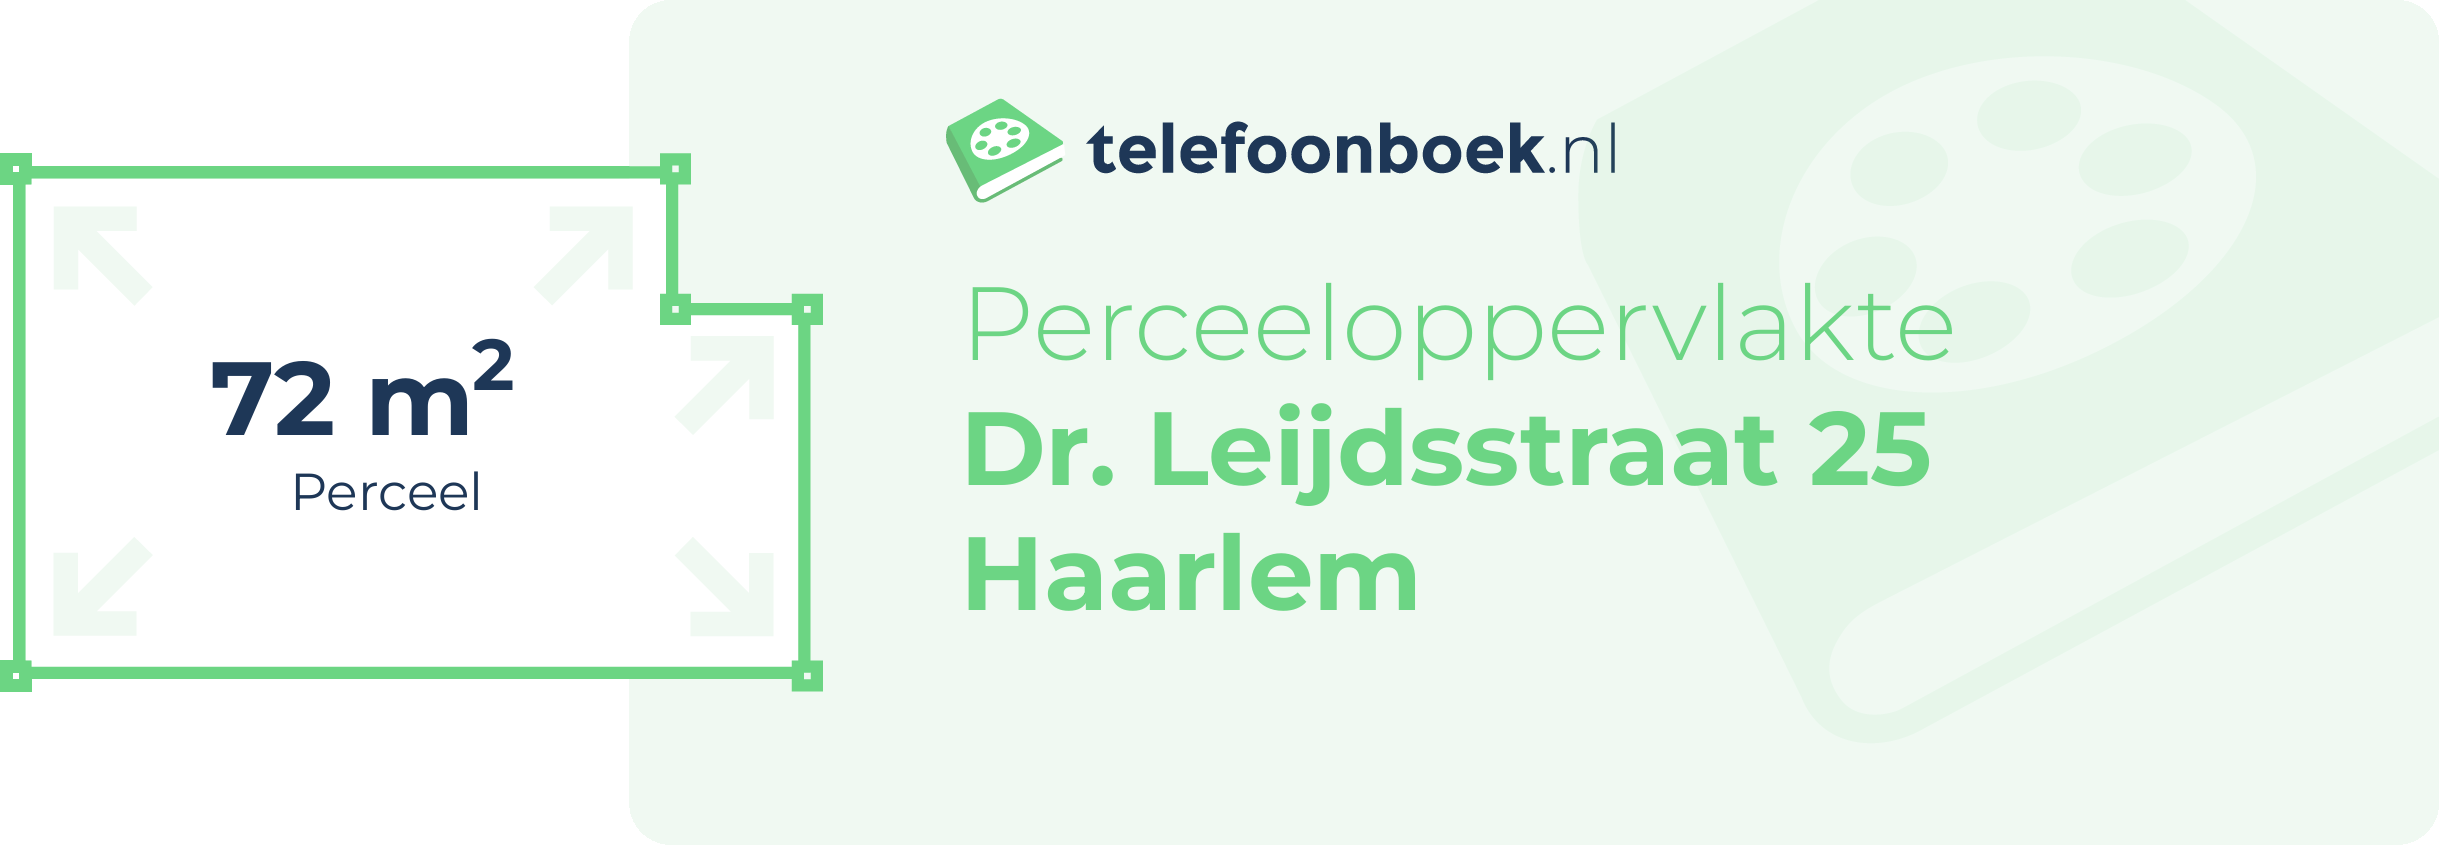 Perceeloppervlakte Dr. Leijdsstraat 25 Haarlem